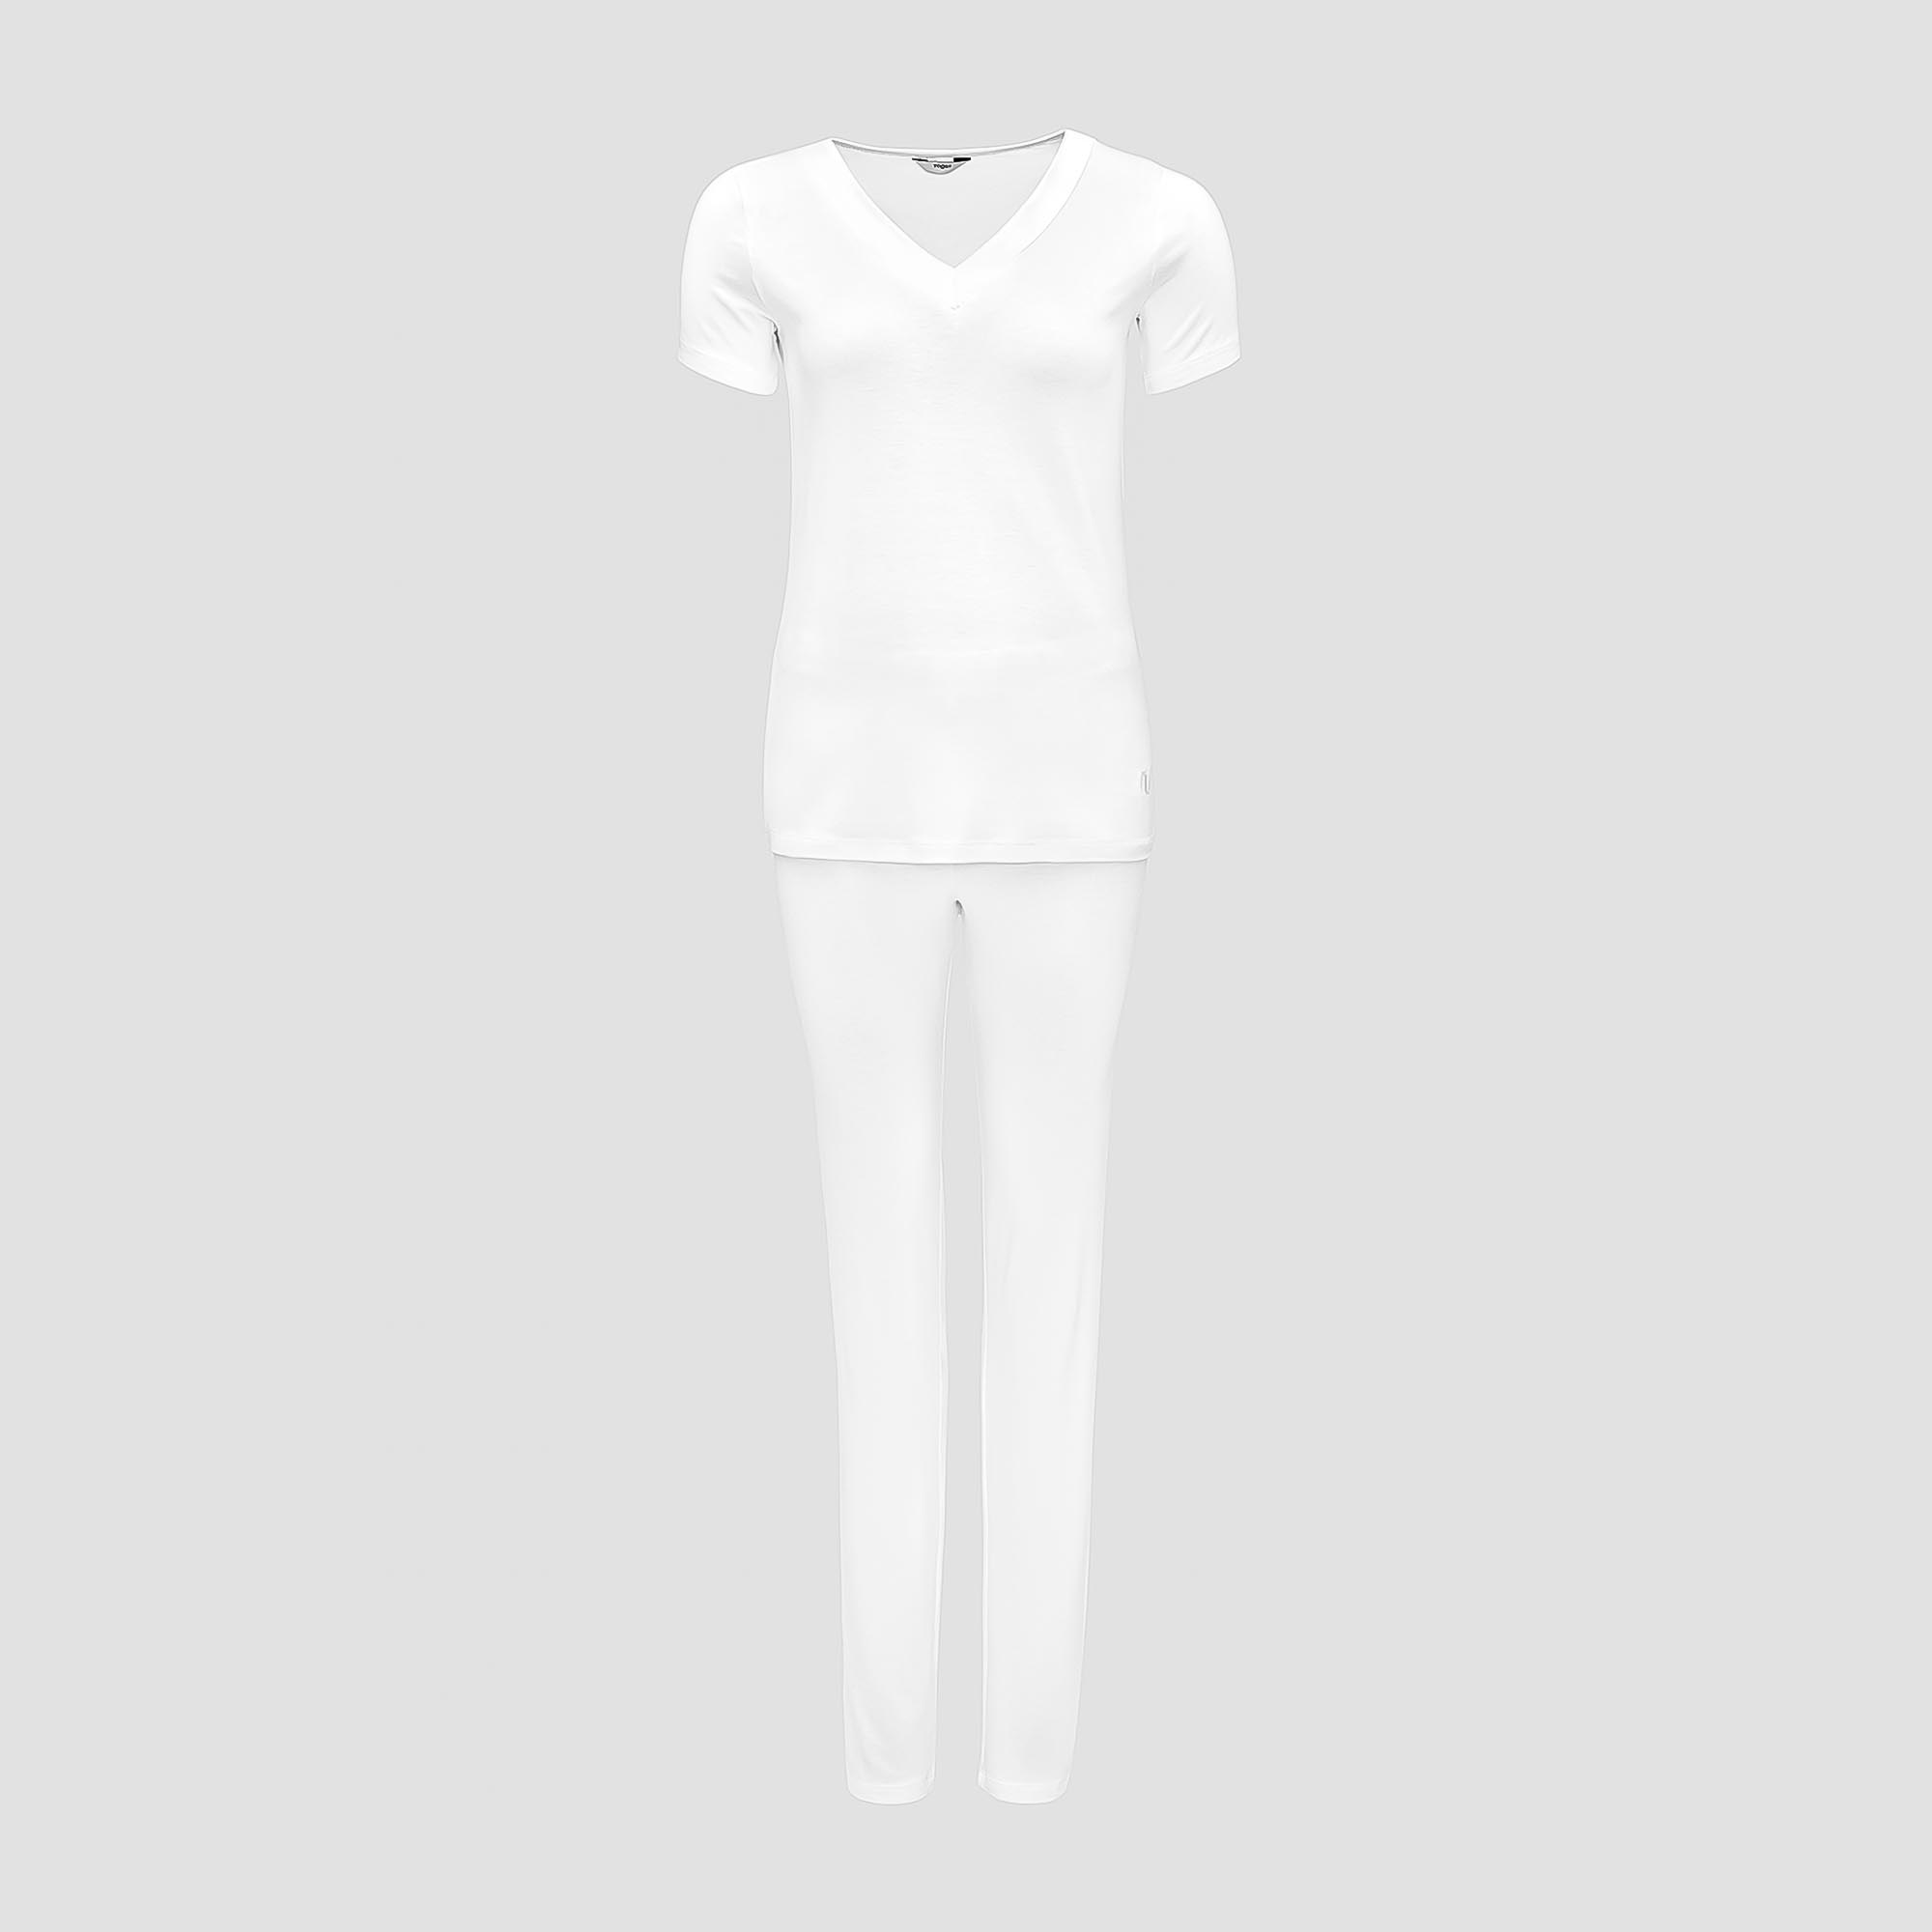 Пижама Togas Ингелла белая женская XL(50) 2 предмета пижама джемпер брюки